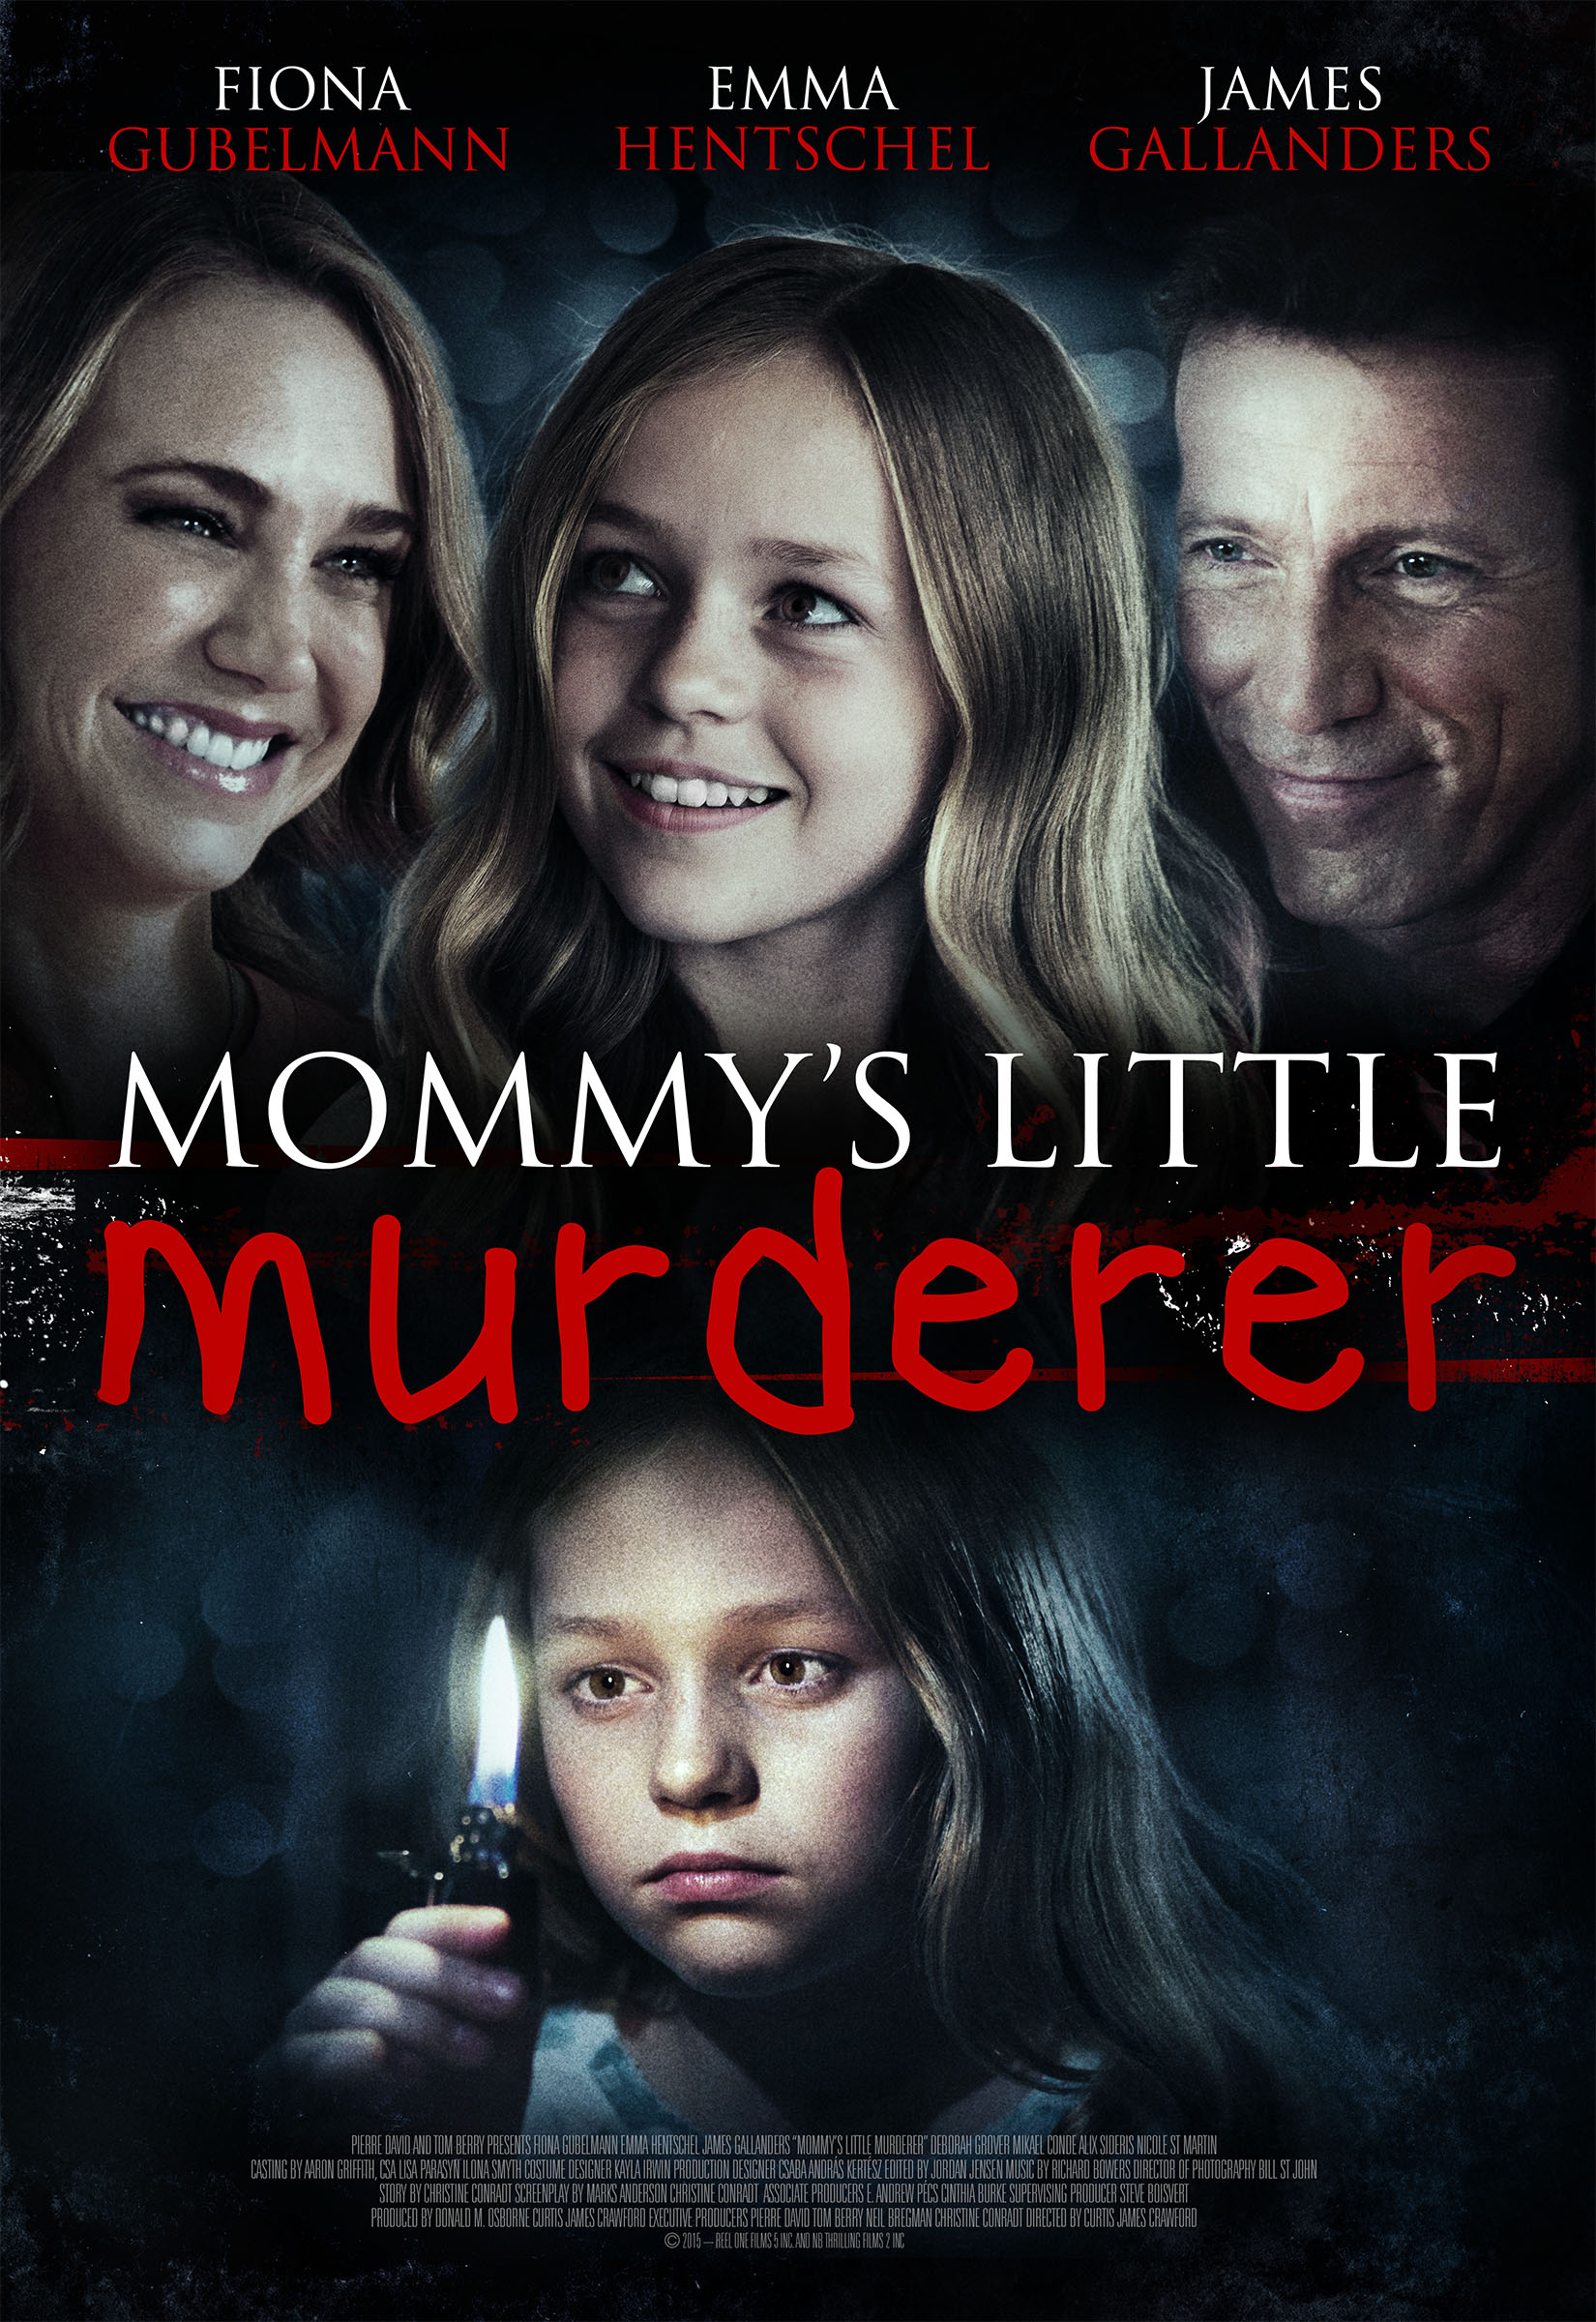 Mommy's Little Girl (2016) starring Fiona Gubelmann on DVD on DVD